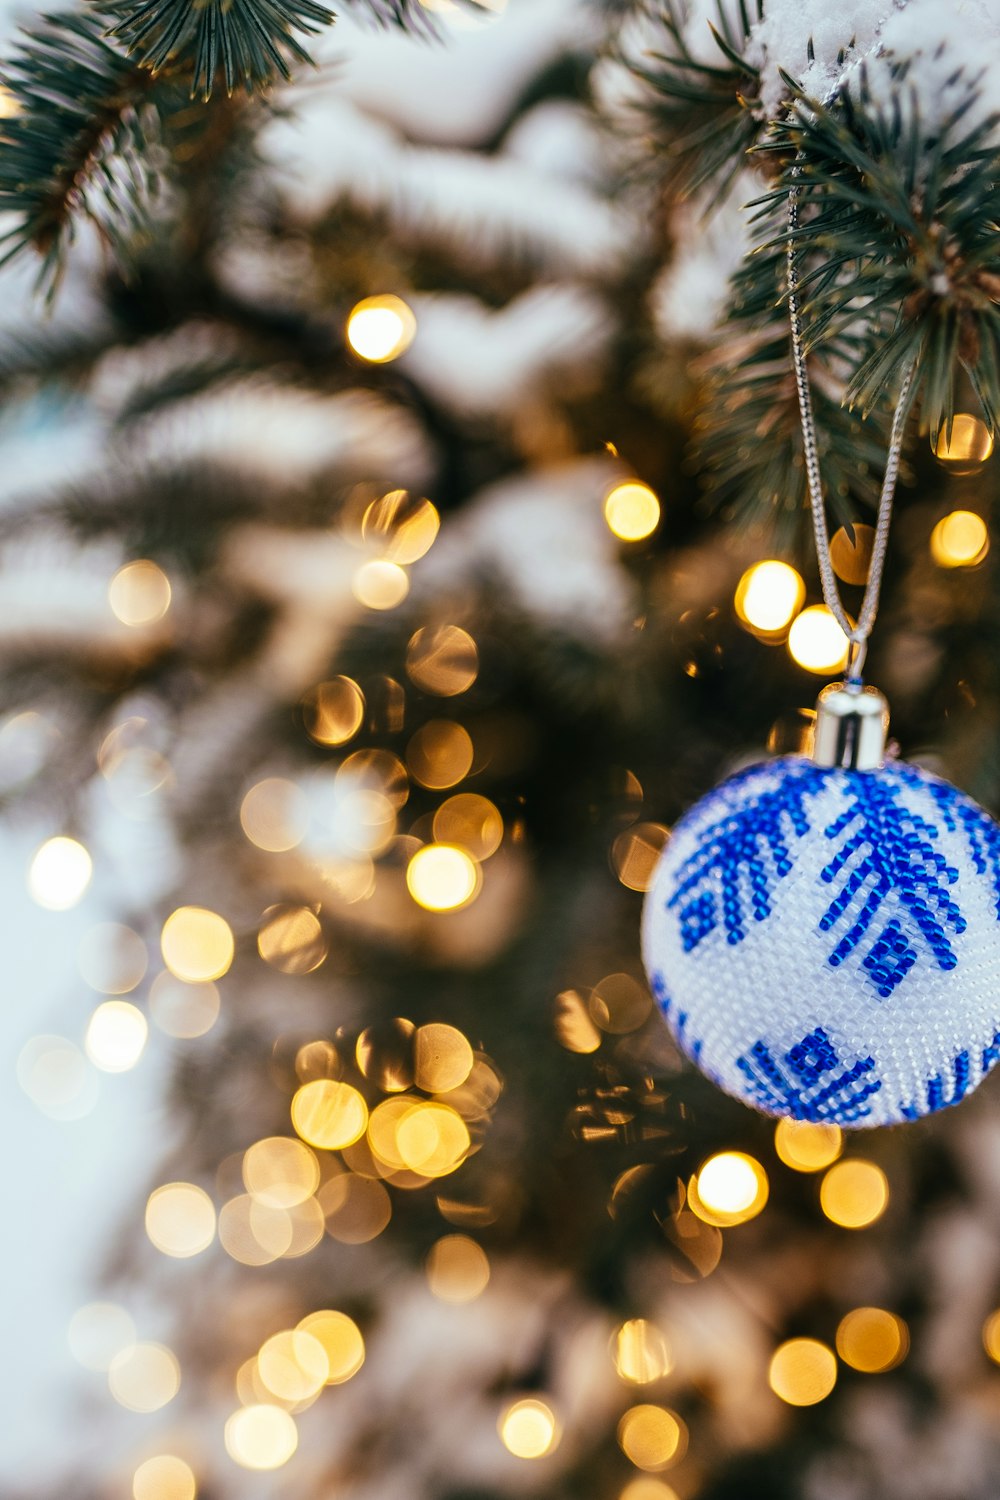 Blau-weiße Kugel hängt am Weihnachtsbaum in der Bokeh-Fotografie